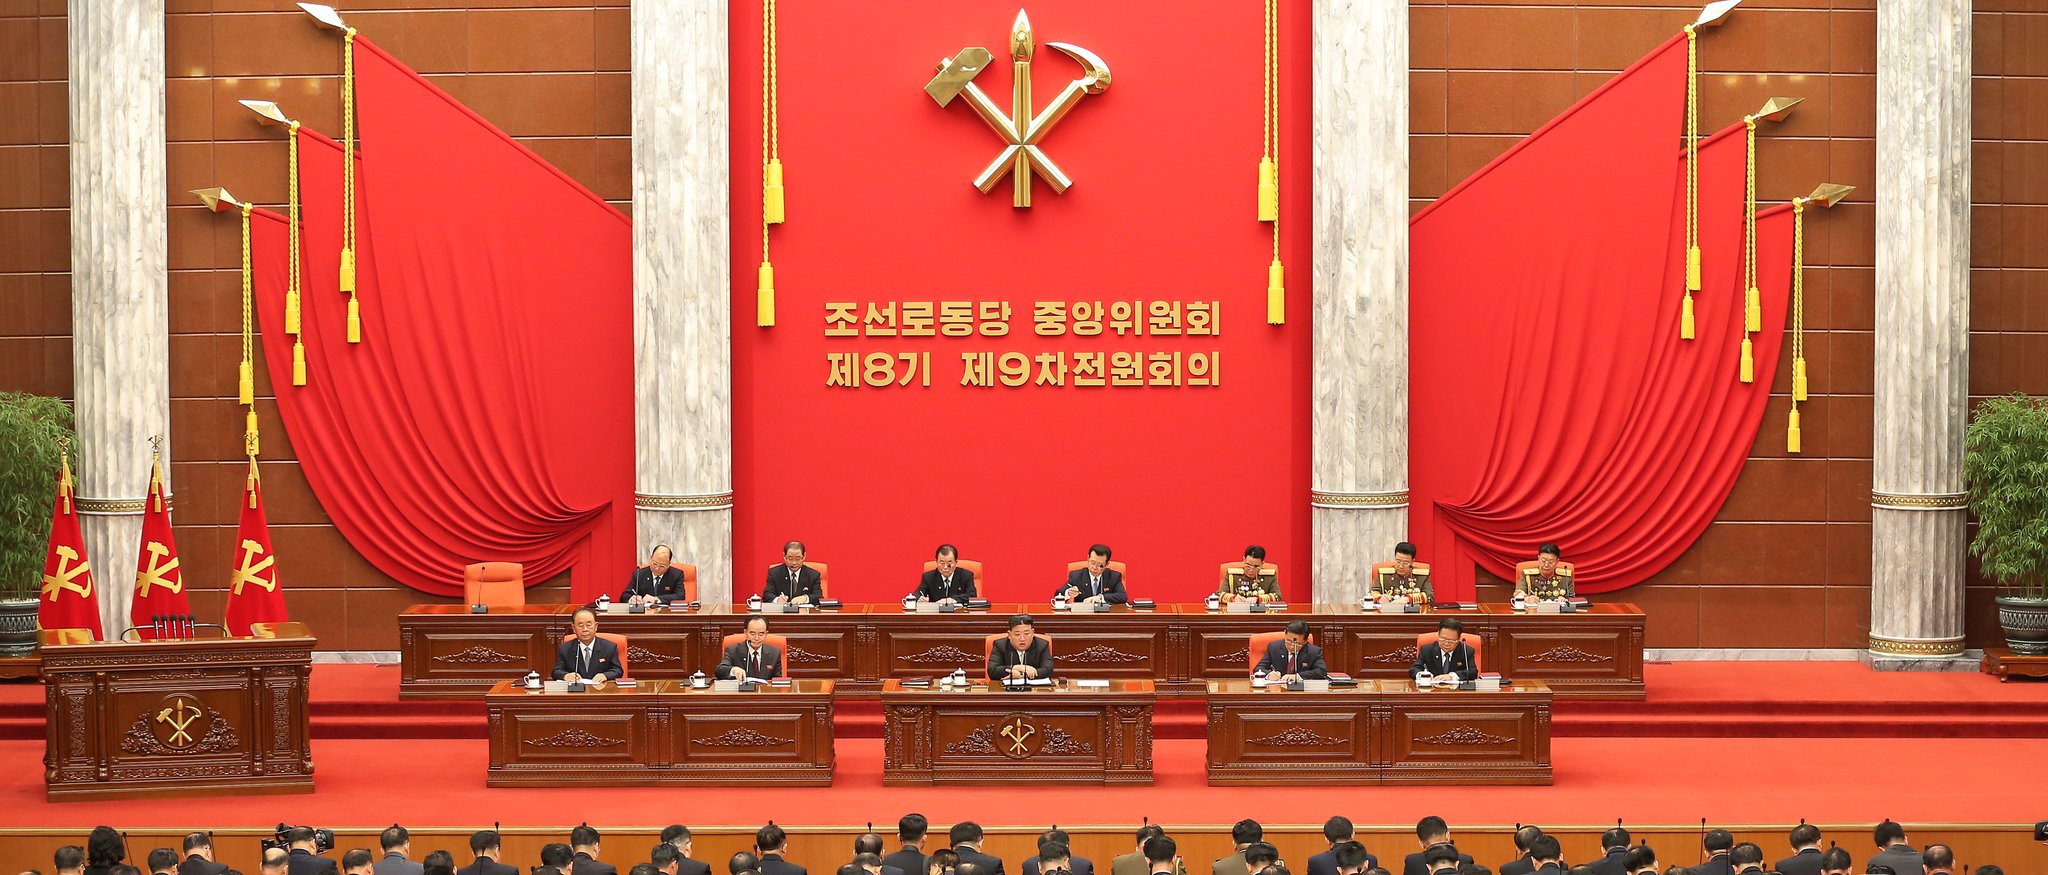 북한이 지난 26일부터 김정은 국무위원장이 참석한 가운데 연말 전원회의 일정에 들어갔다. 북한 노동당의 연말 전원회의는 올해 사업을 결산하고 내년 국정운영 방향과 사업계획을 세우기 위한 자리다. 조선중앙통신=연합뉴스